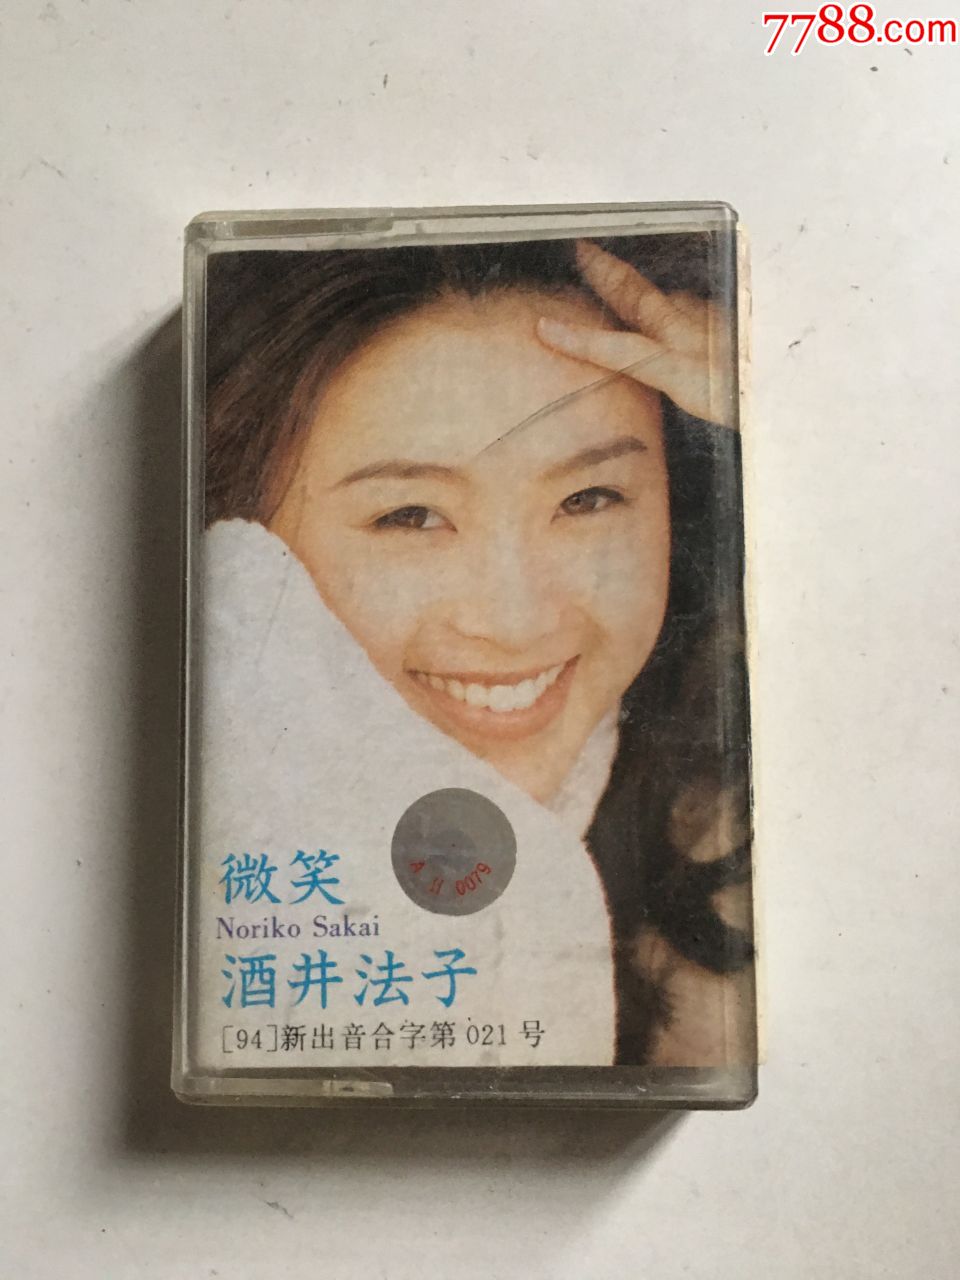 酒井法子微笑(磁带)5